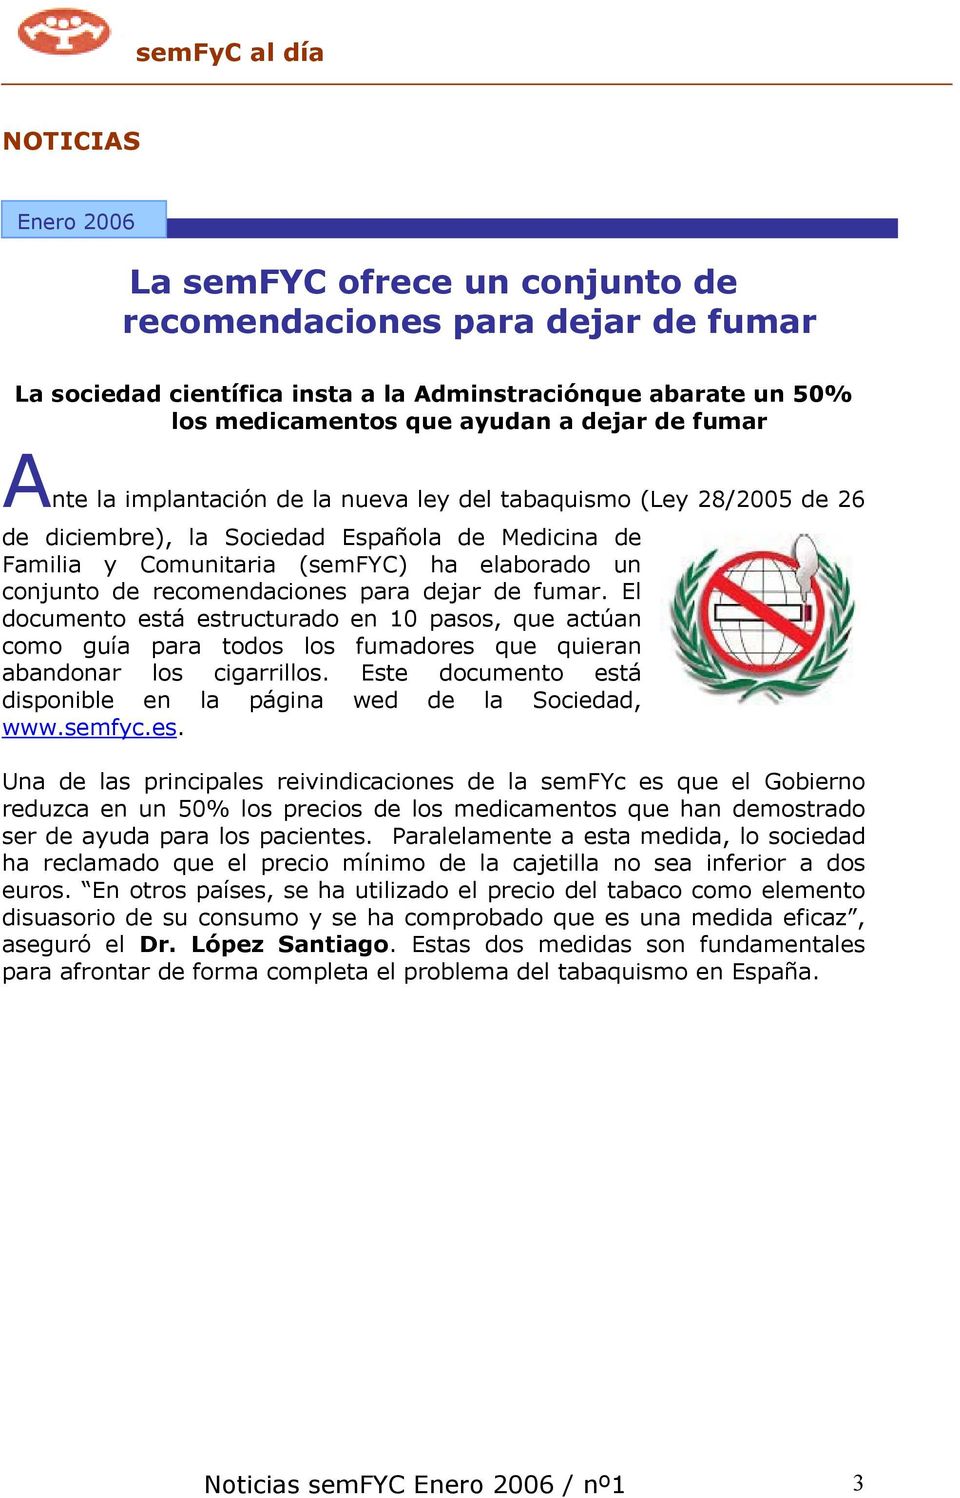 recomendaciones para dejar de fumar. El documento está estructurado en 10 pasos, que actúan como guía para todos los fumadores que quieran abandonar los cigarrillos.